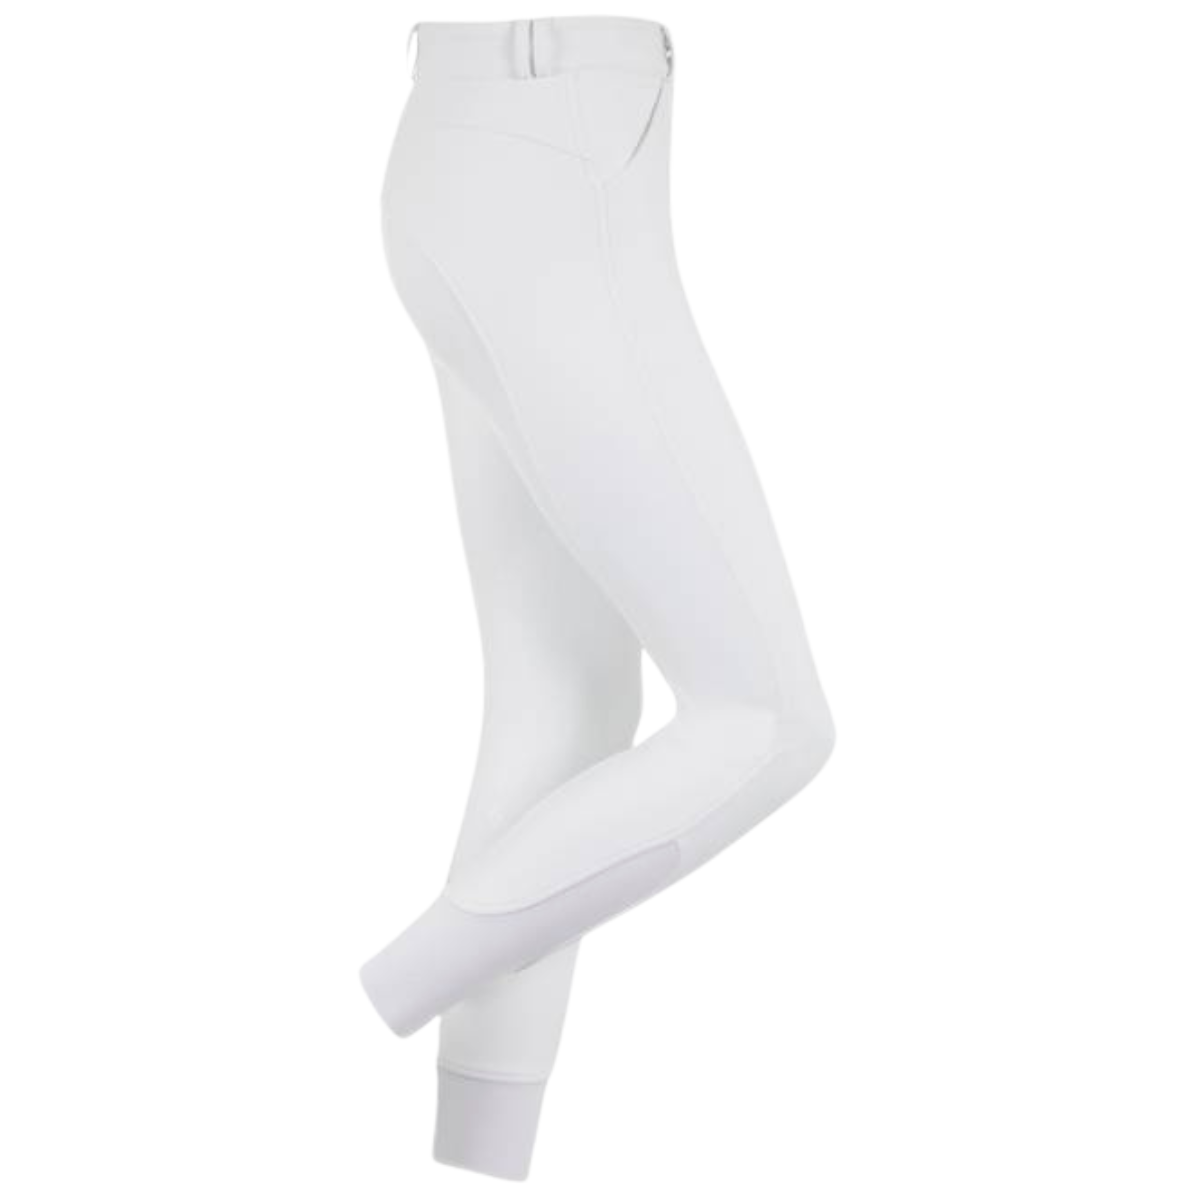 LeMieux 'Drytex Waterproof' Full Seat Breeches in White - Women's 26